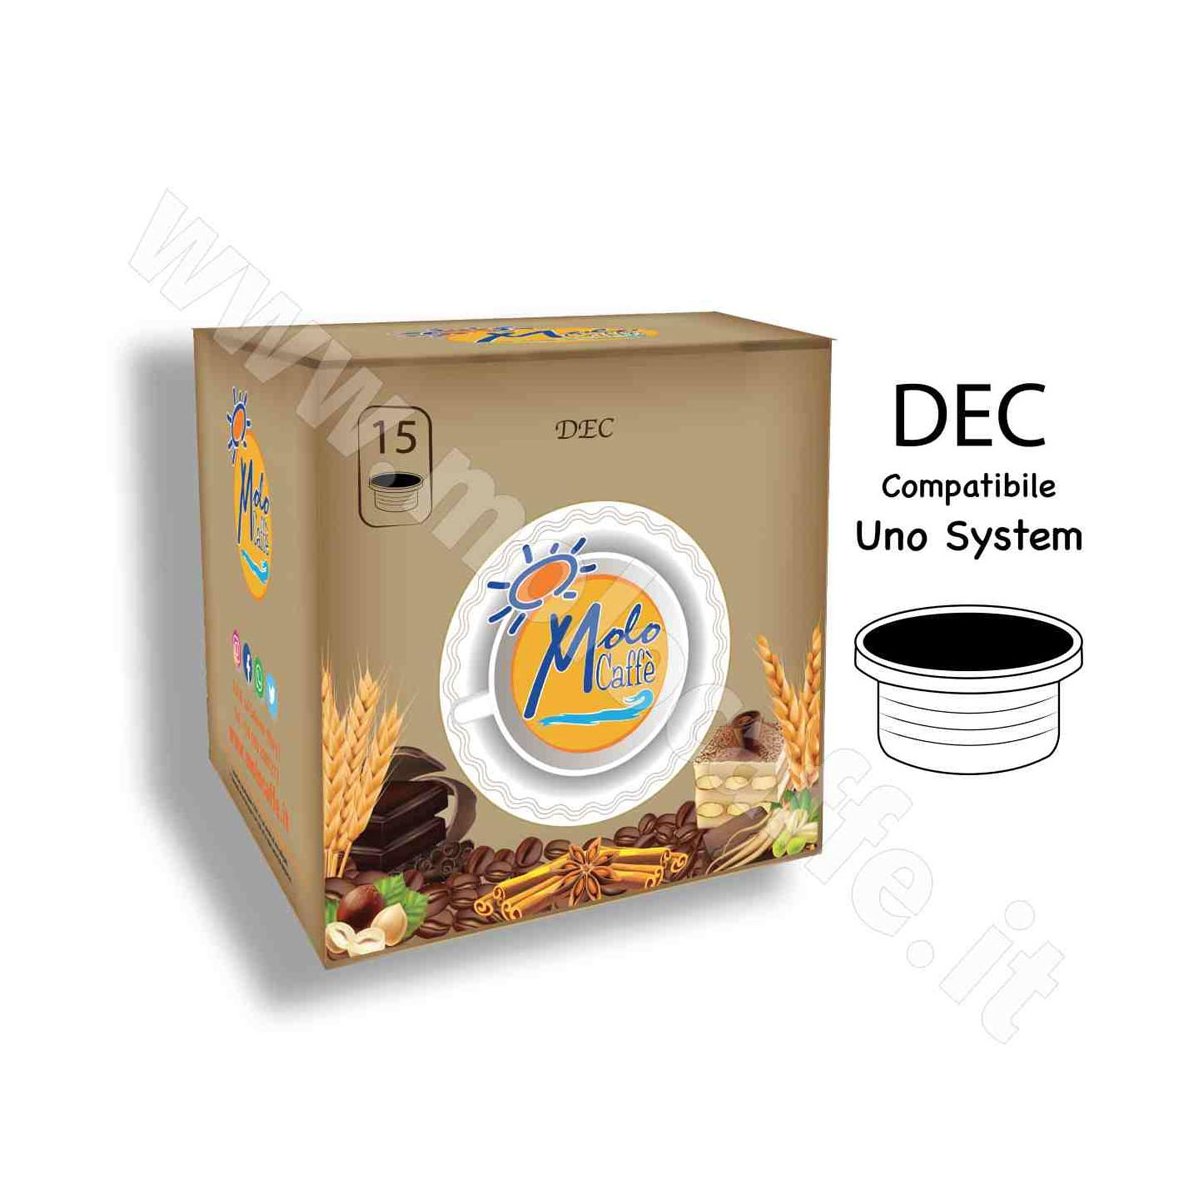 DEC Capsule Compatibili UNO SYSTEM - Box 15 Pz DECAFFEINATO